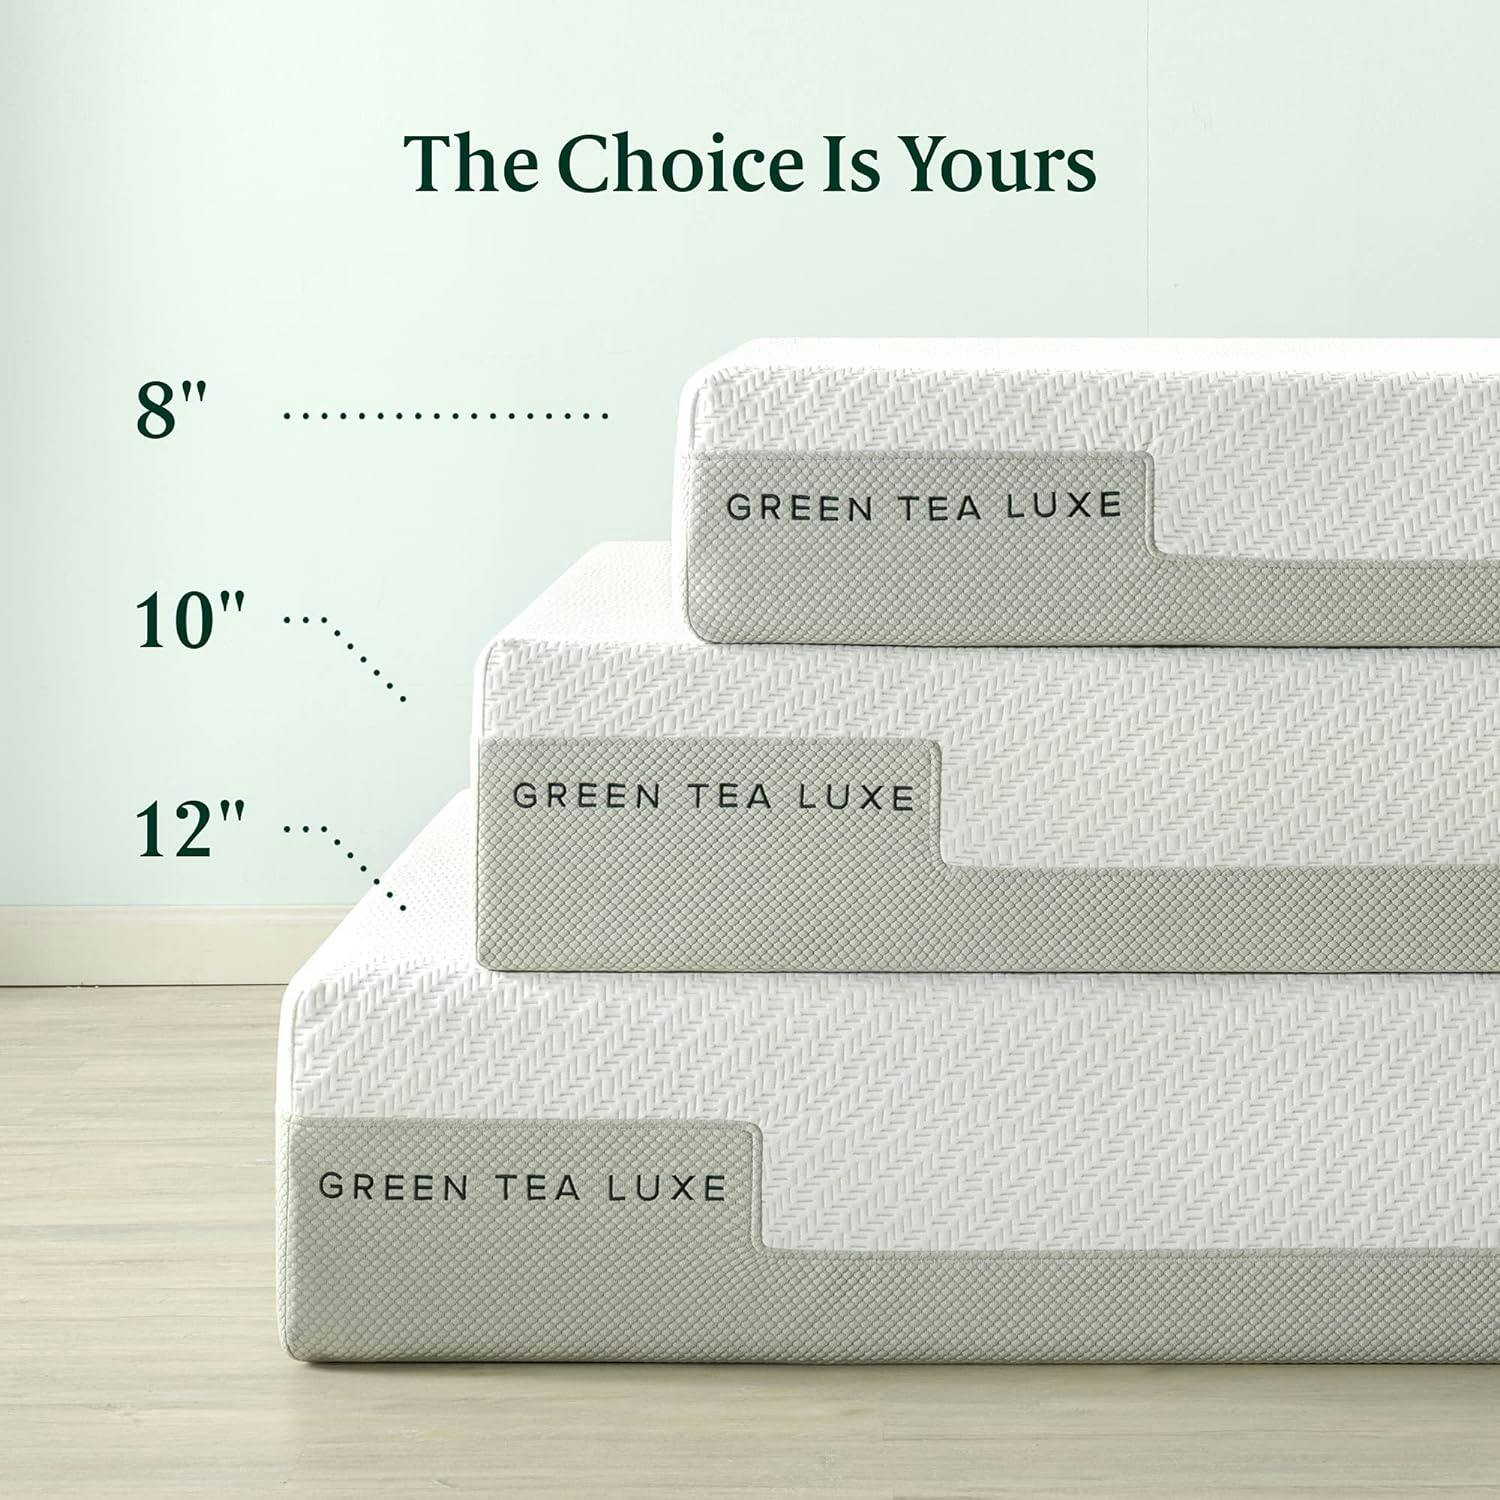 Green Tea Luxe 12" Queen Memory Foam Mattress with 7-Zone Ventilation